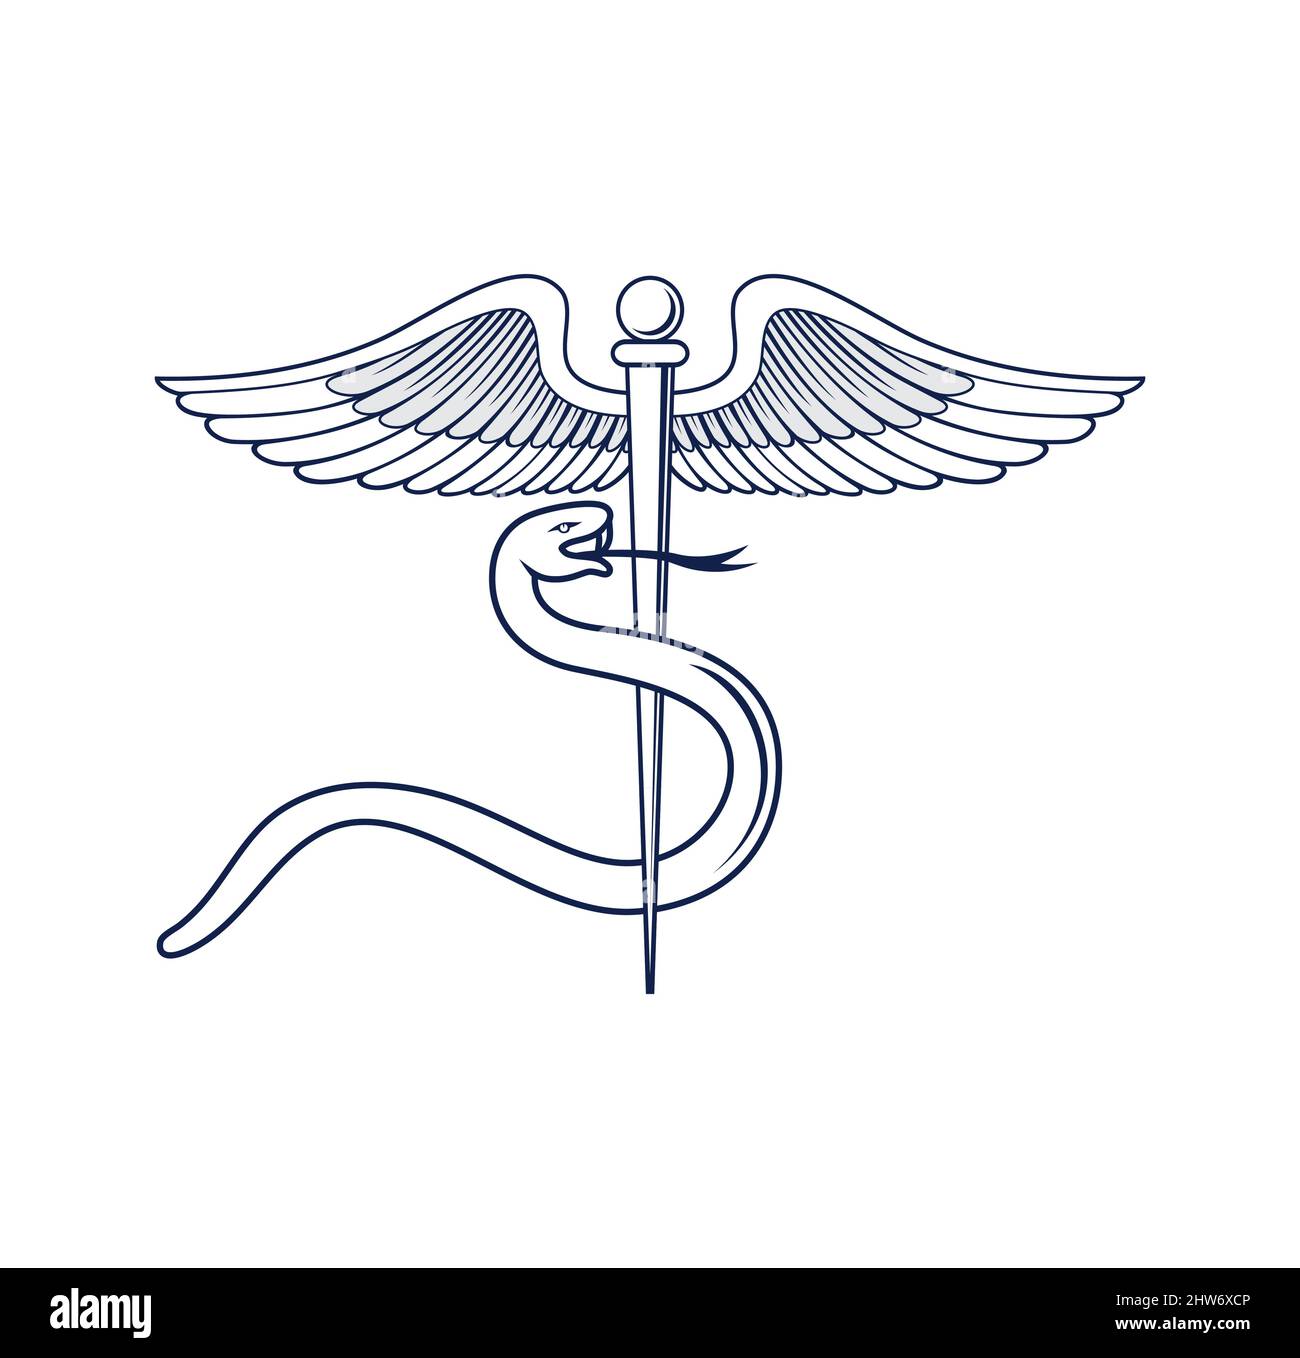 Medizinische caduceus Symbol Design Illustration Vektor eps Format , geeignet für Ihre Design-Bedürfnisse, Logo, Illustration, Animation, etc. Stock Vektor